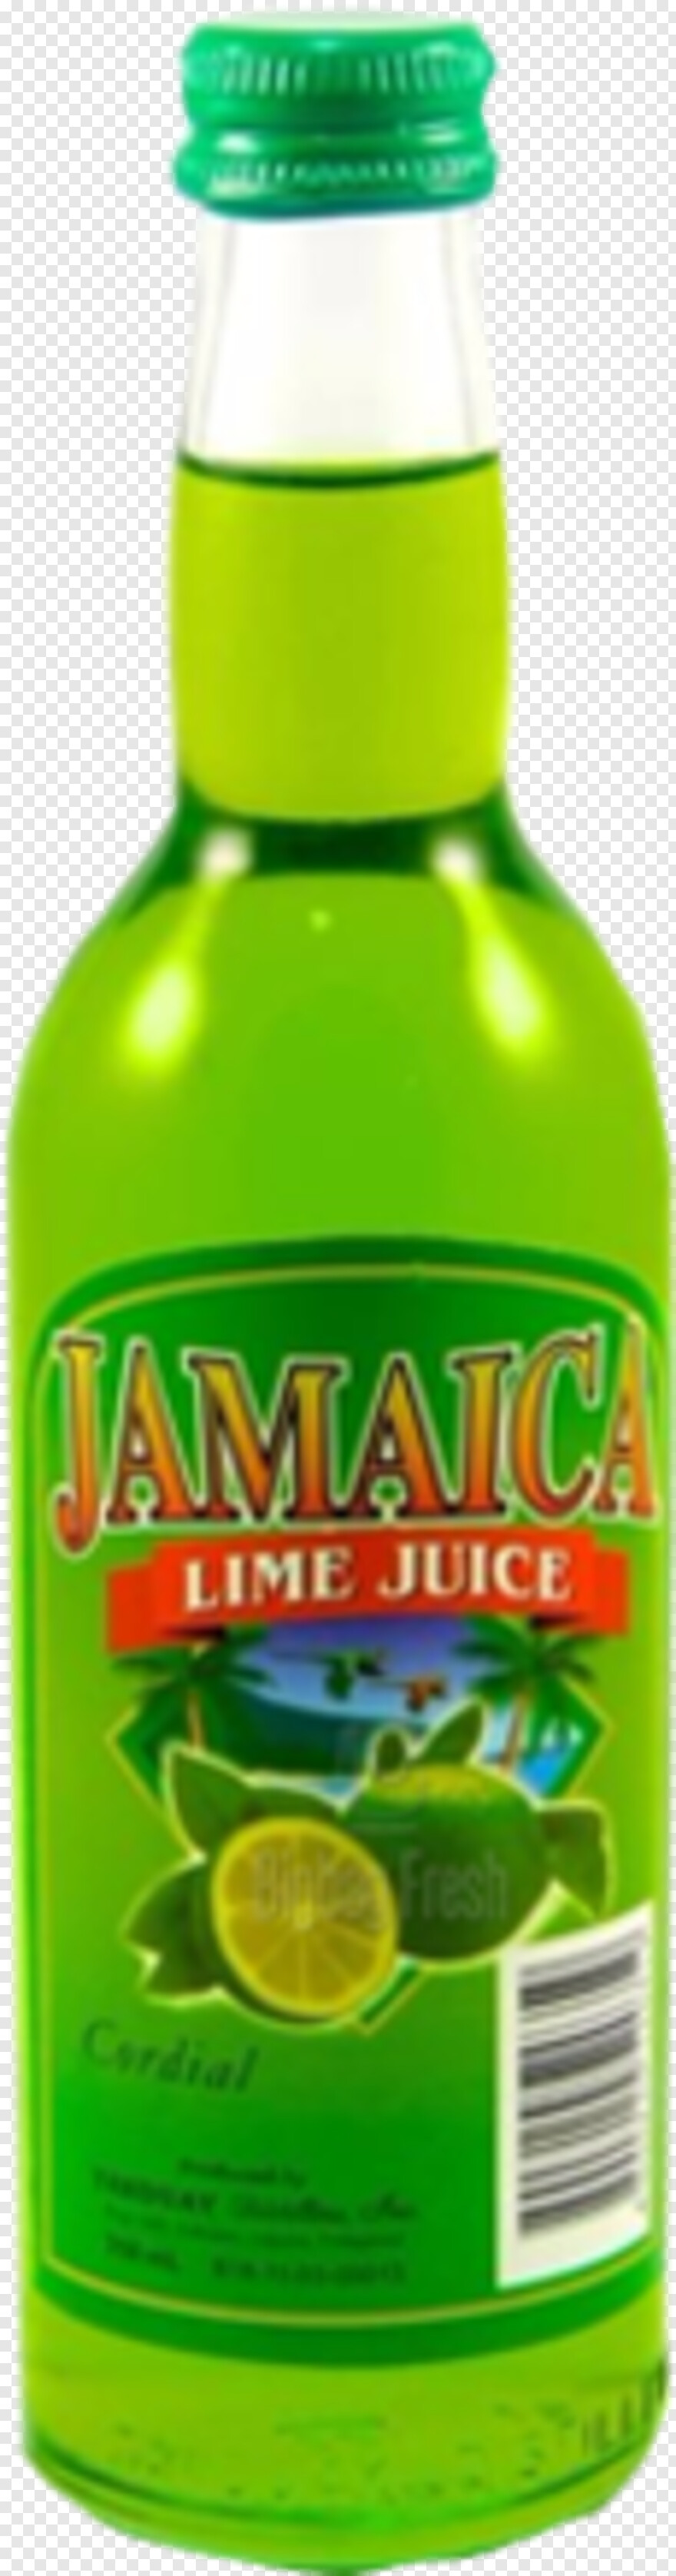 lime-juice # 499495